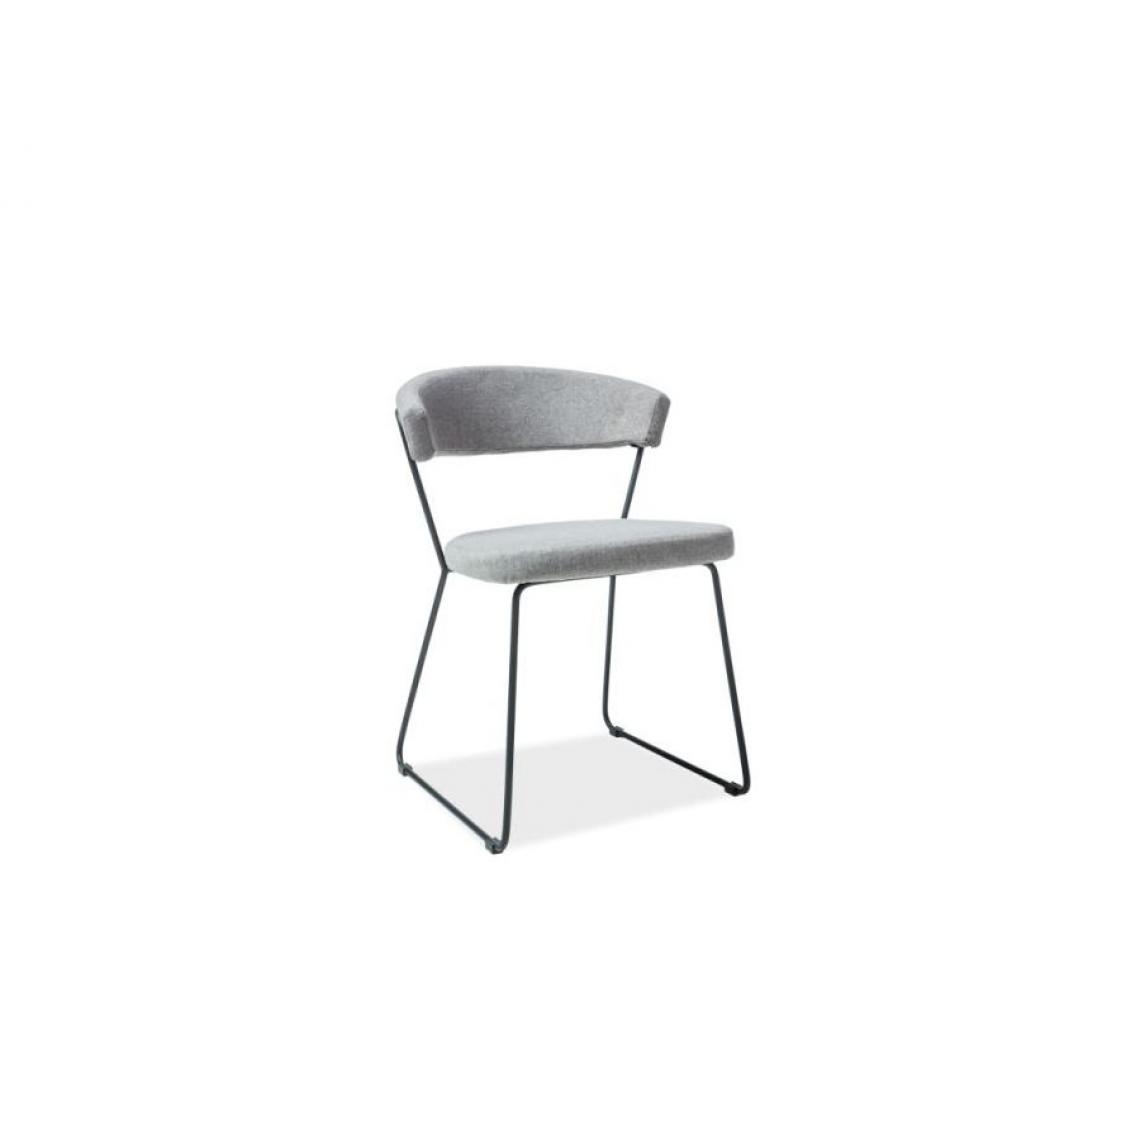 Hucoco - HALIX | Chaise style loft salon salle à manger bureau | 77x53x46cm | Tissu haute qualité | Base en métal | Chaise moderne - Gris - Chaises